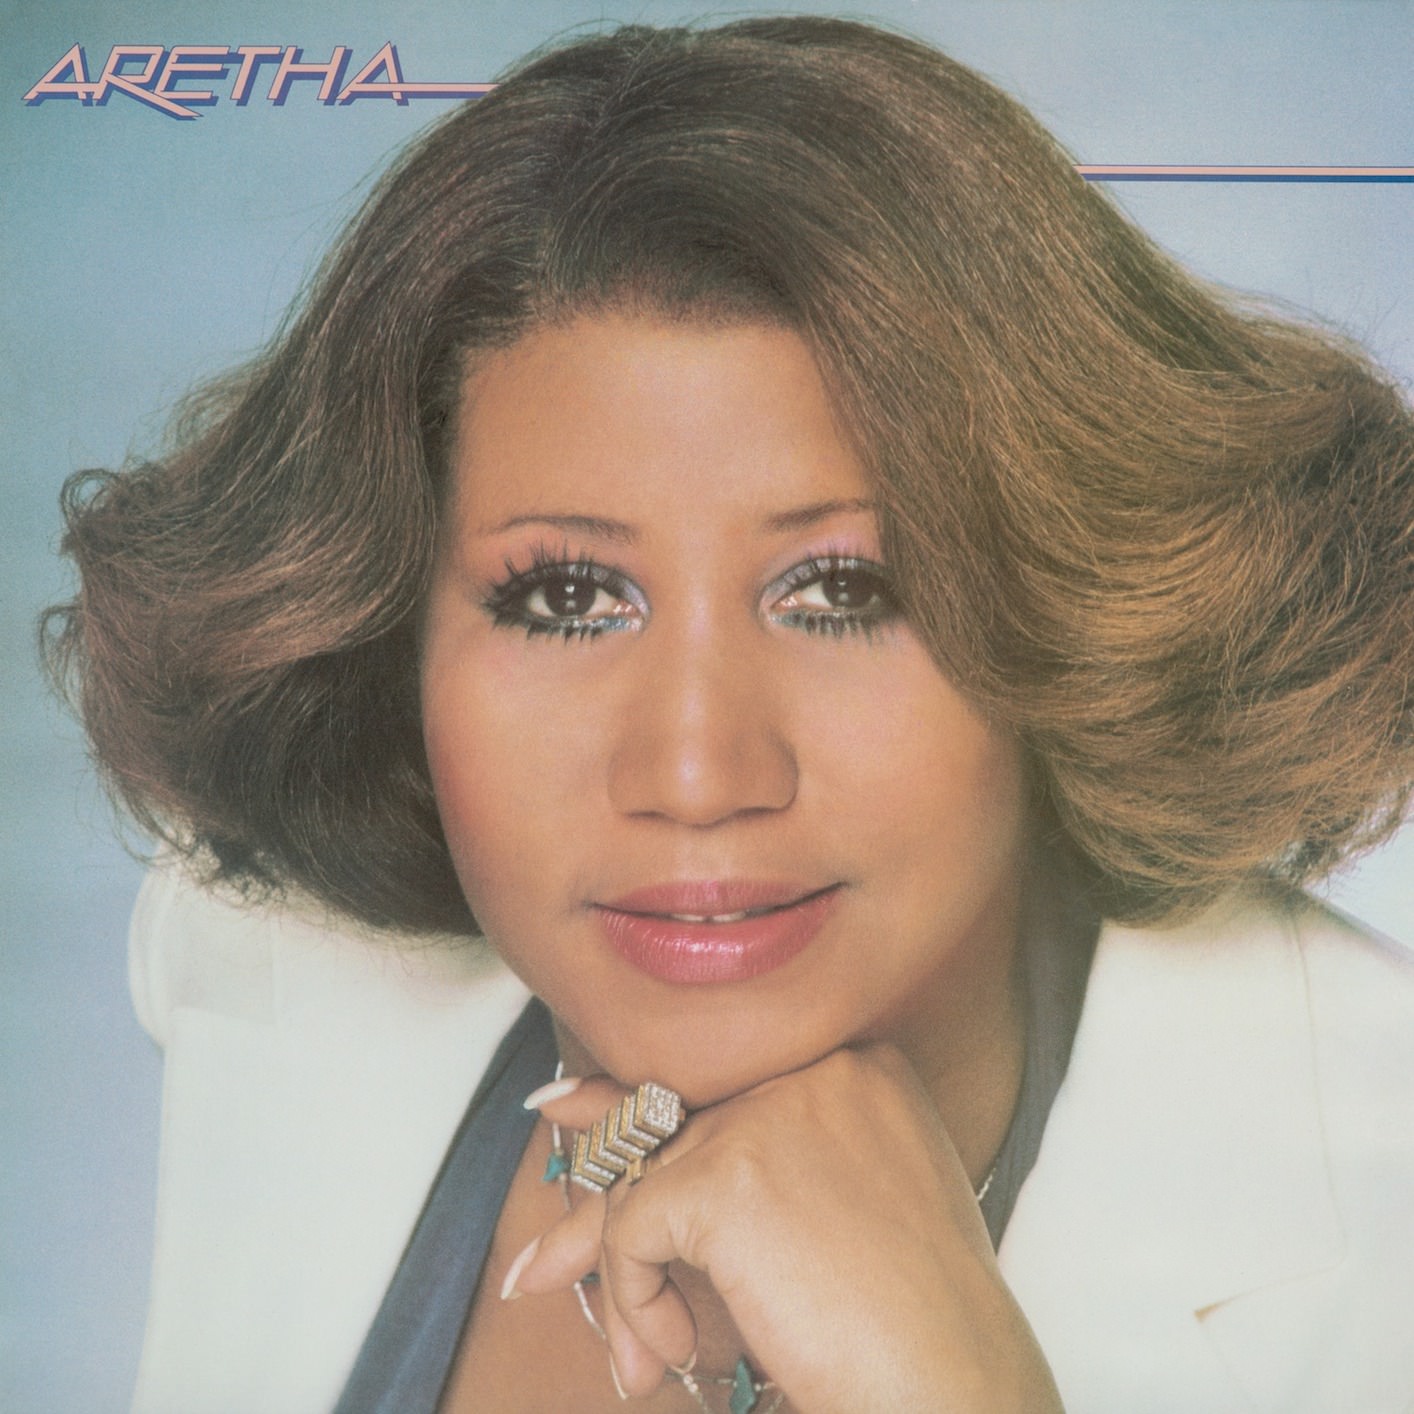 Aretha Franklin - Aretha (1980/2009/2014) [Qobuz FLAC 24bit/96kHz]